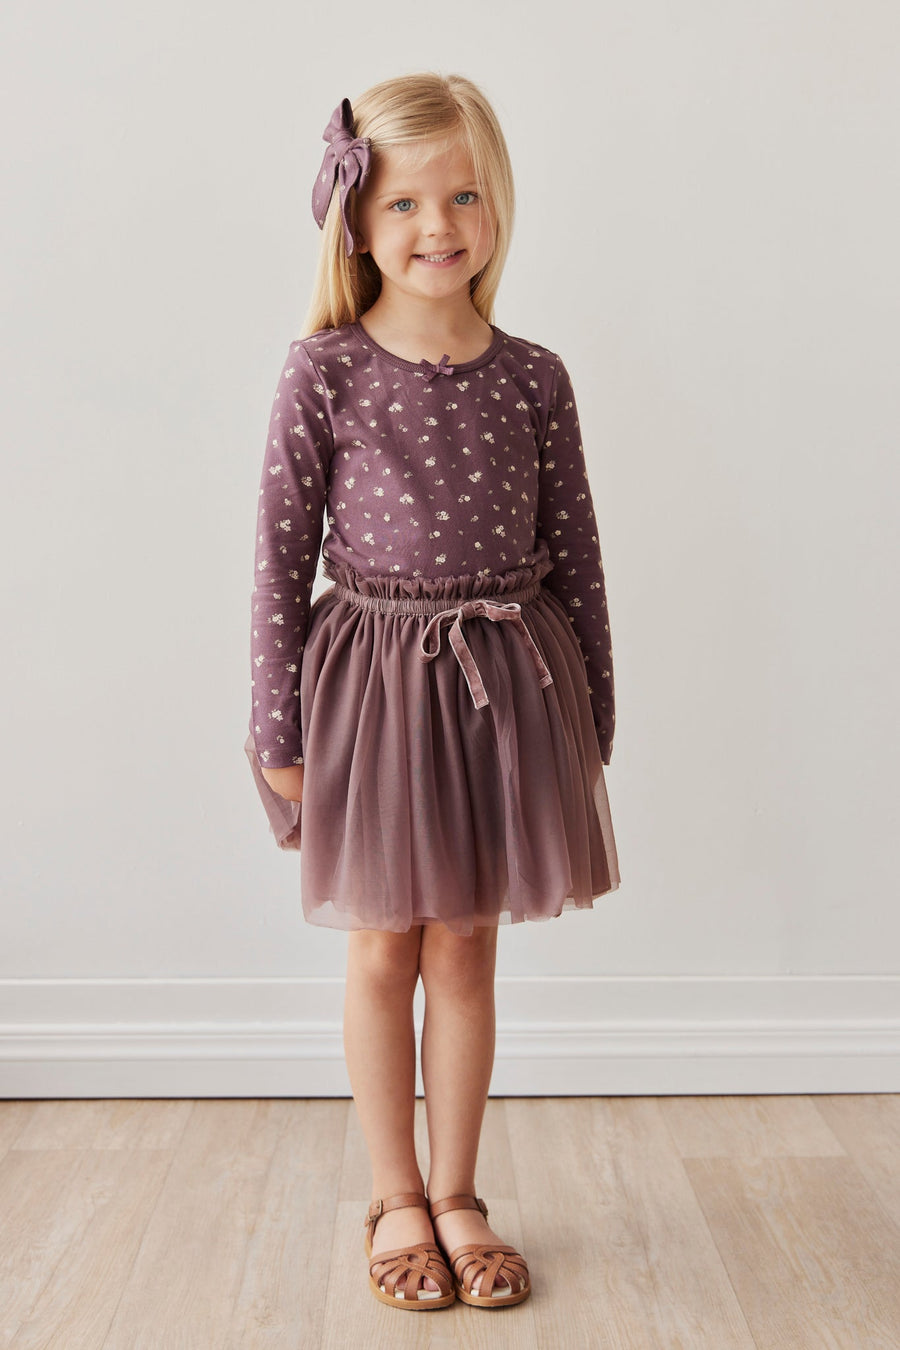 Classic Tutu Skirt - Twilight Childrens Skirt from Jamie Kay USA